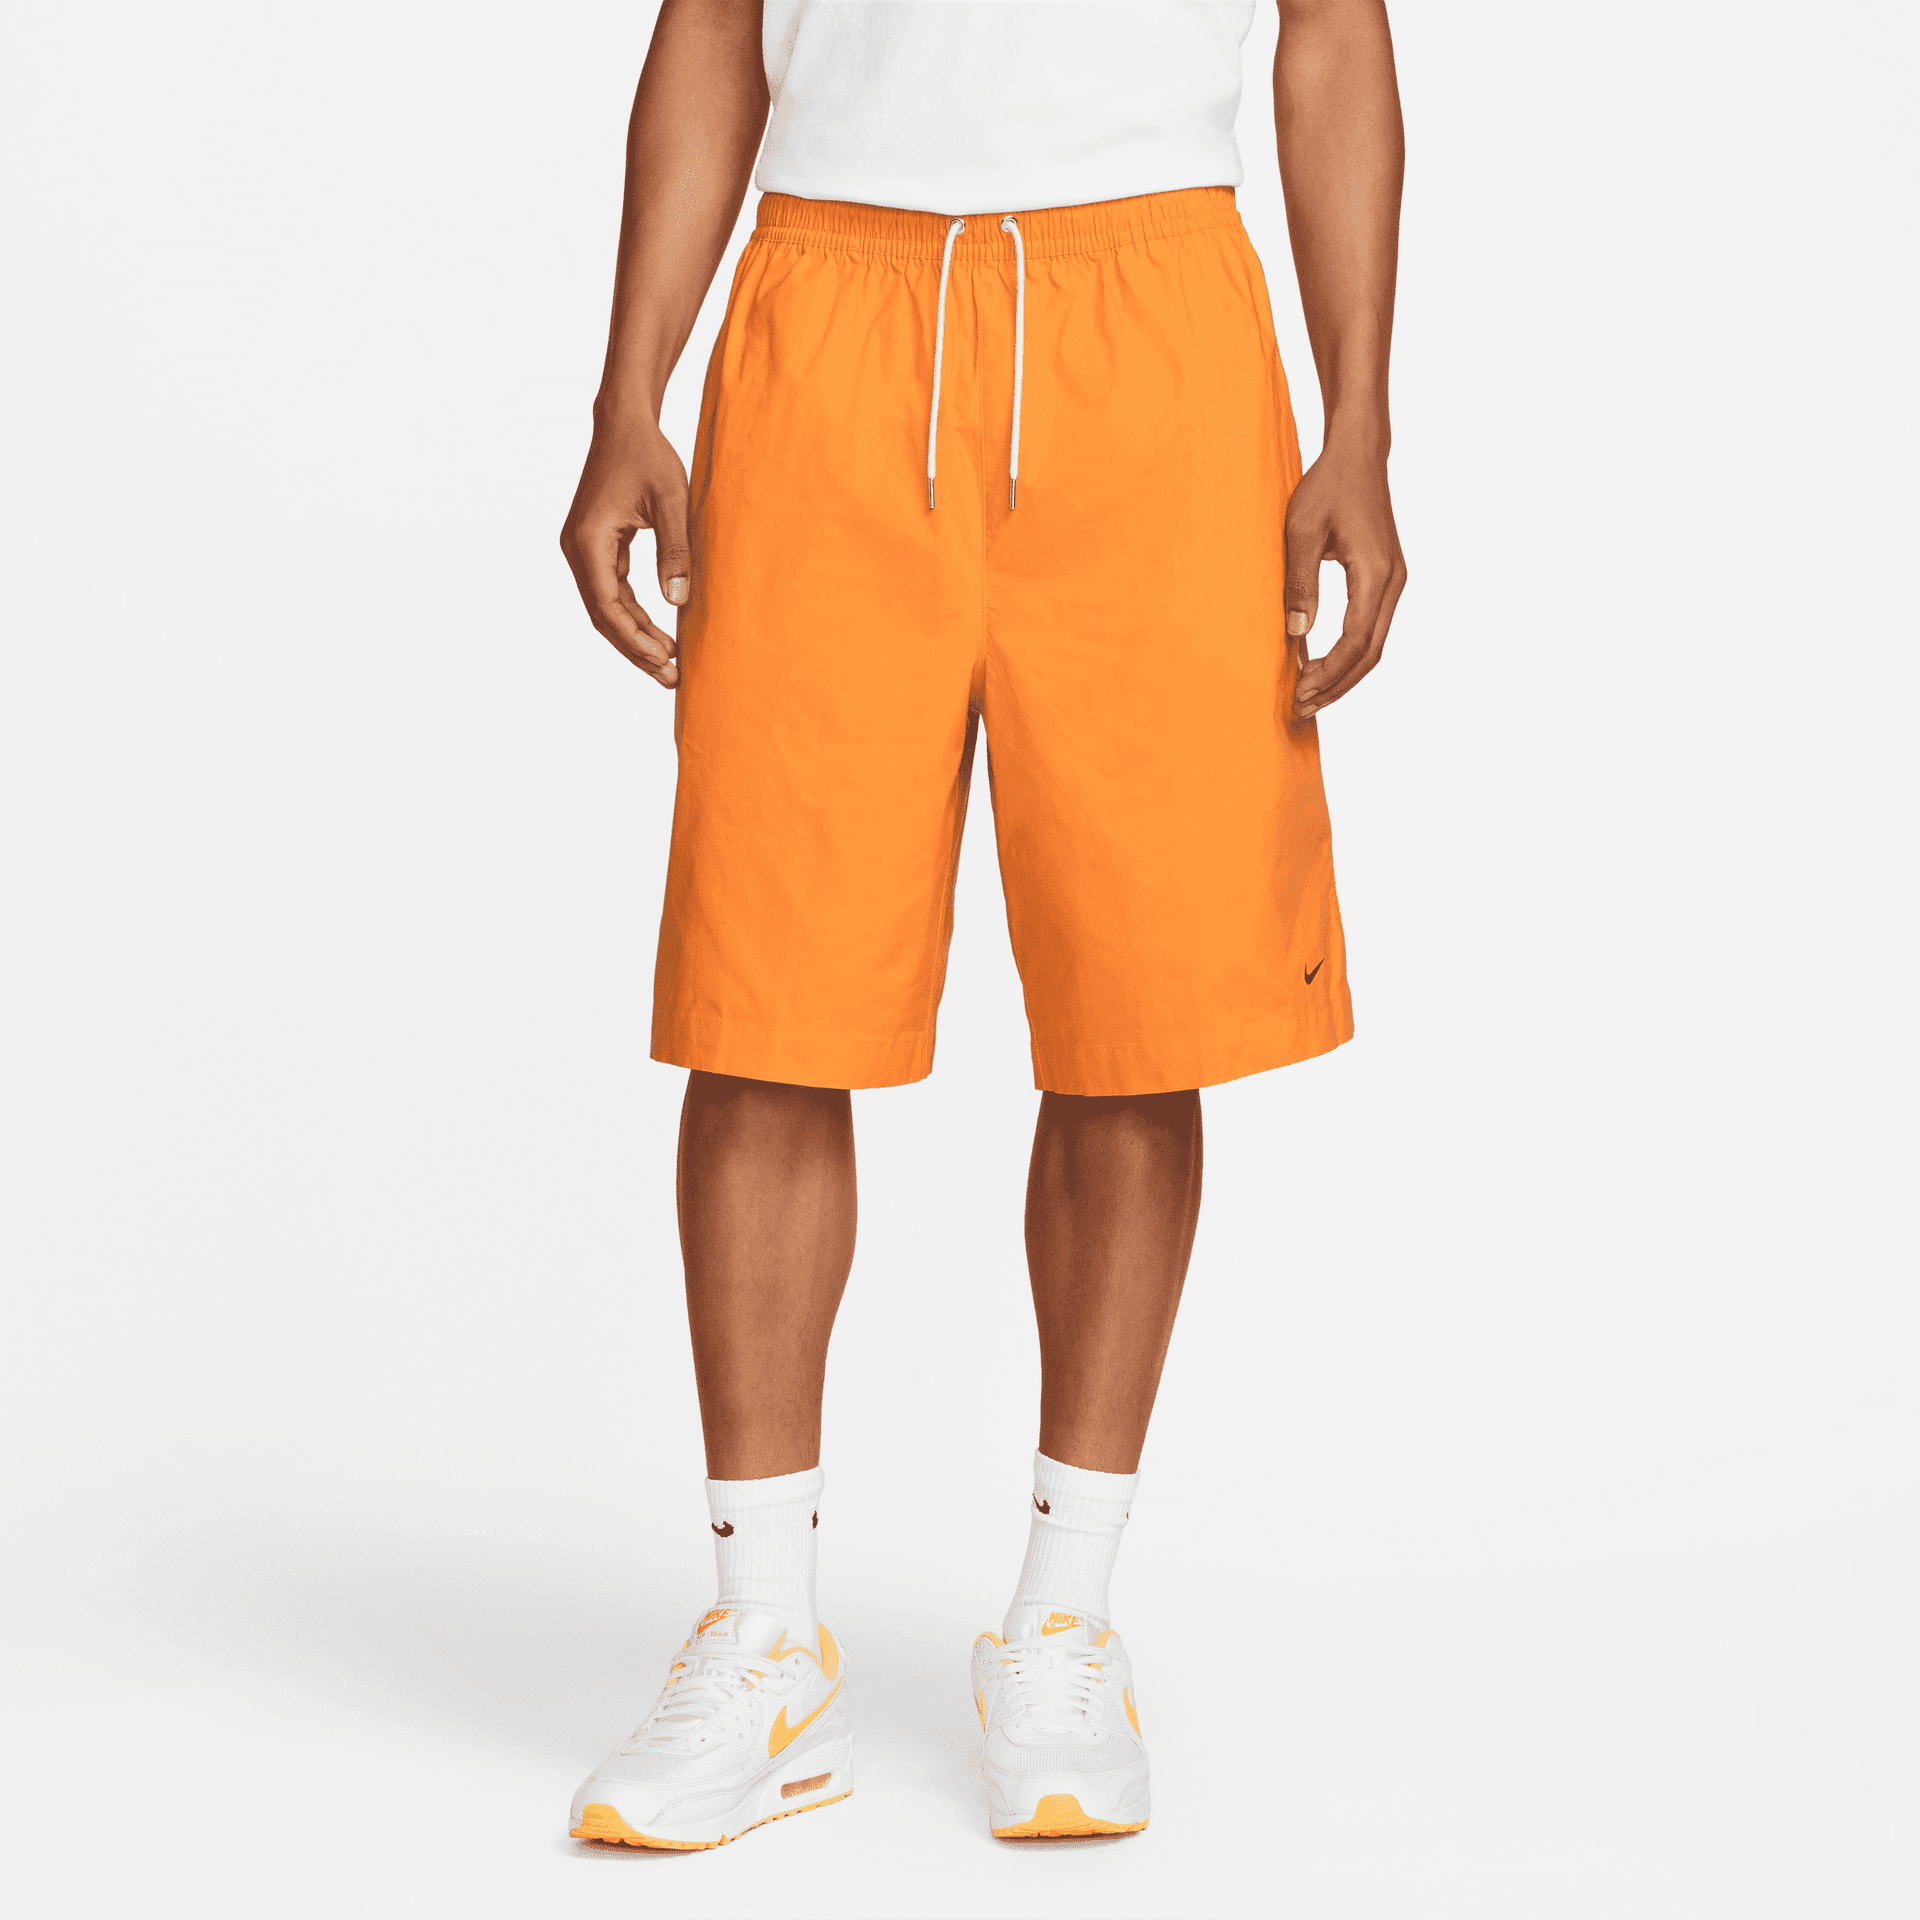 Спортивные шорты мужские Nike Ste Wvn Oversized Short DM6692-886 оранжевые XL